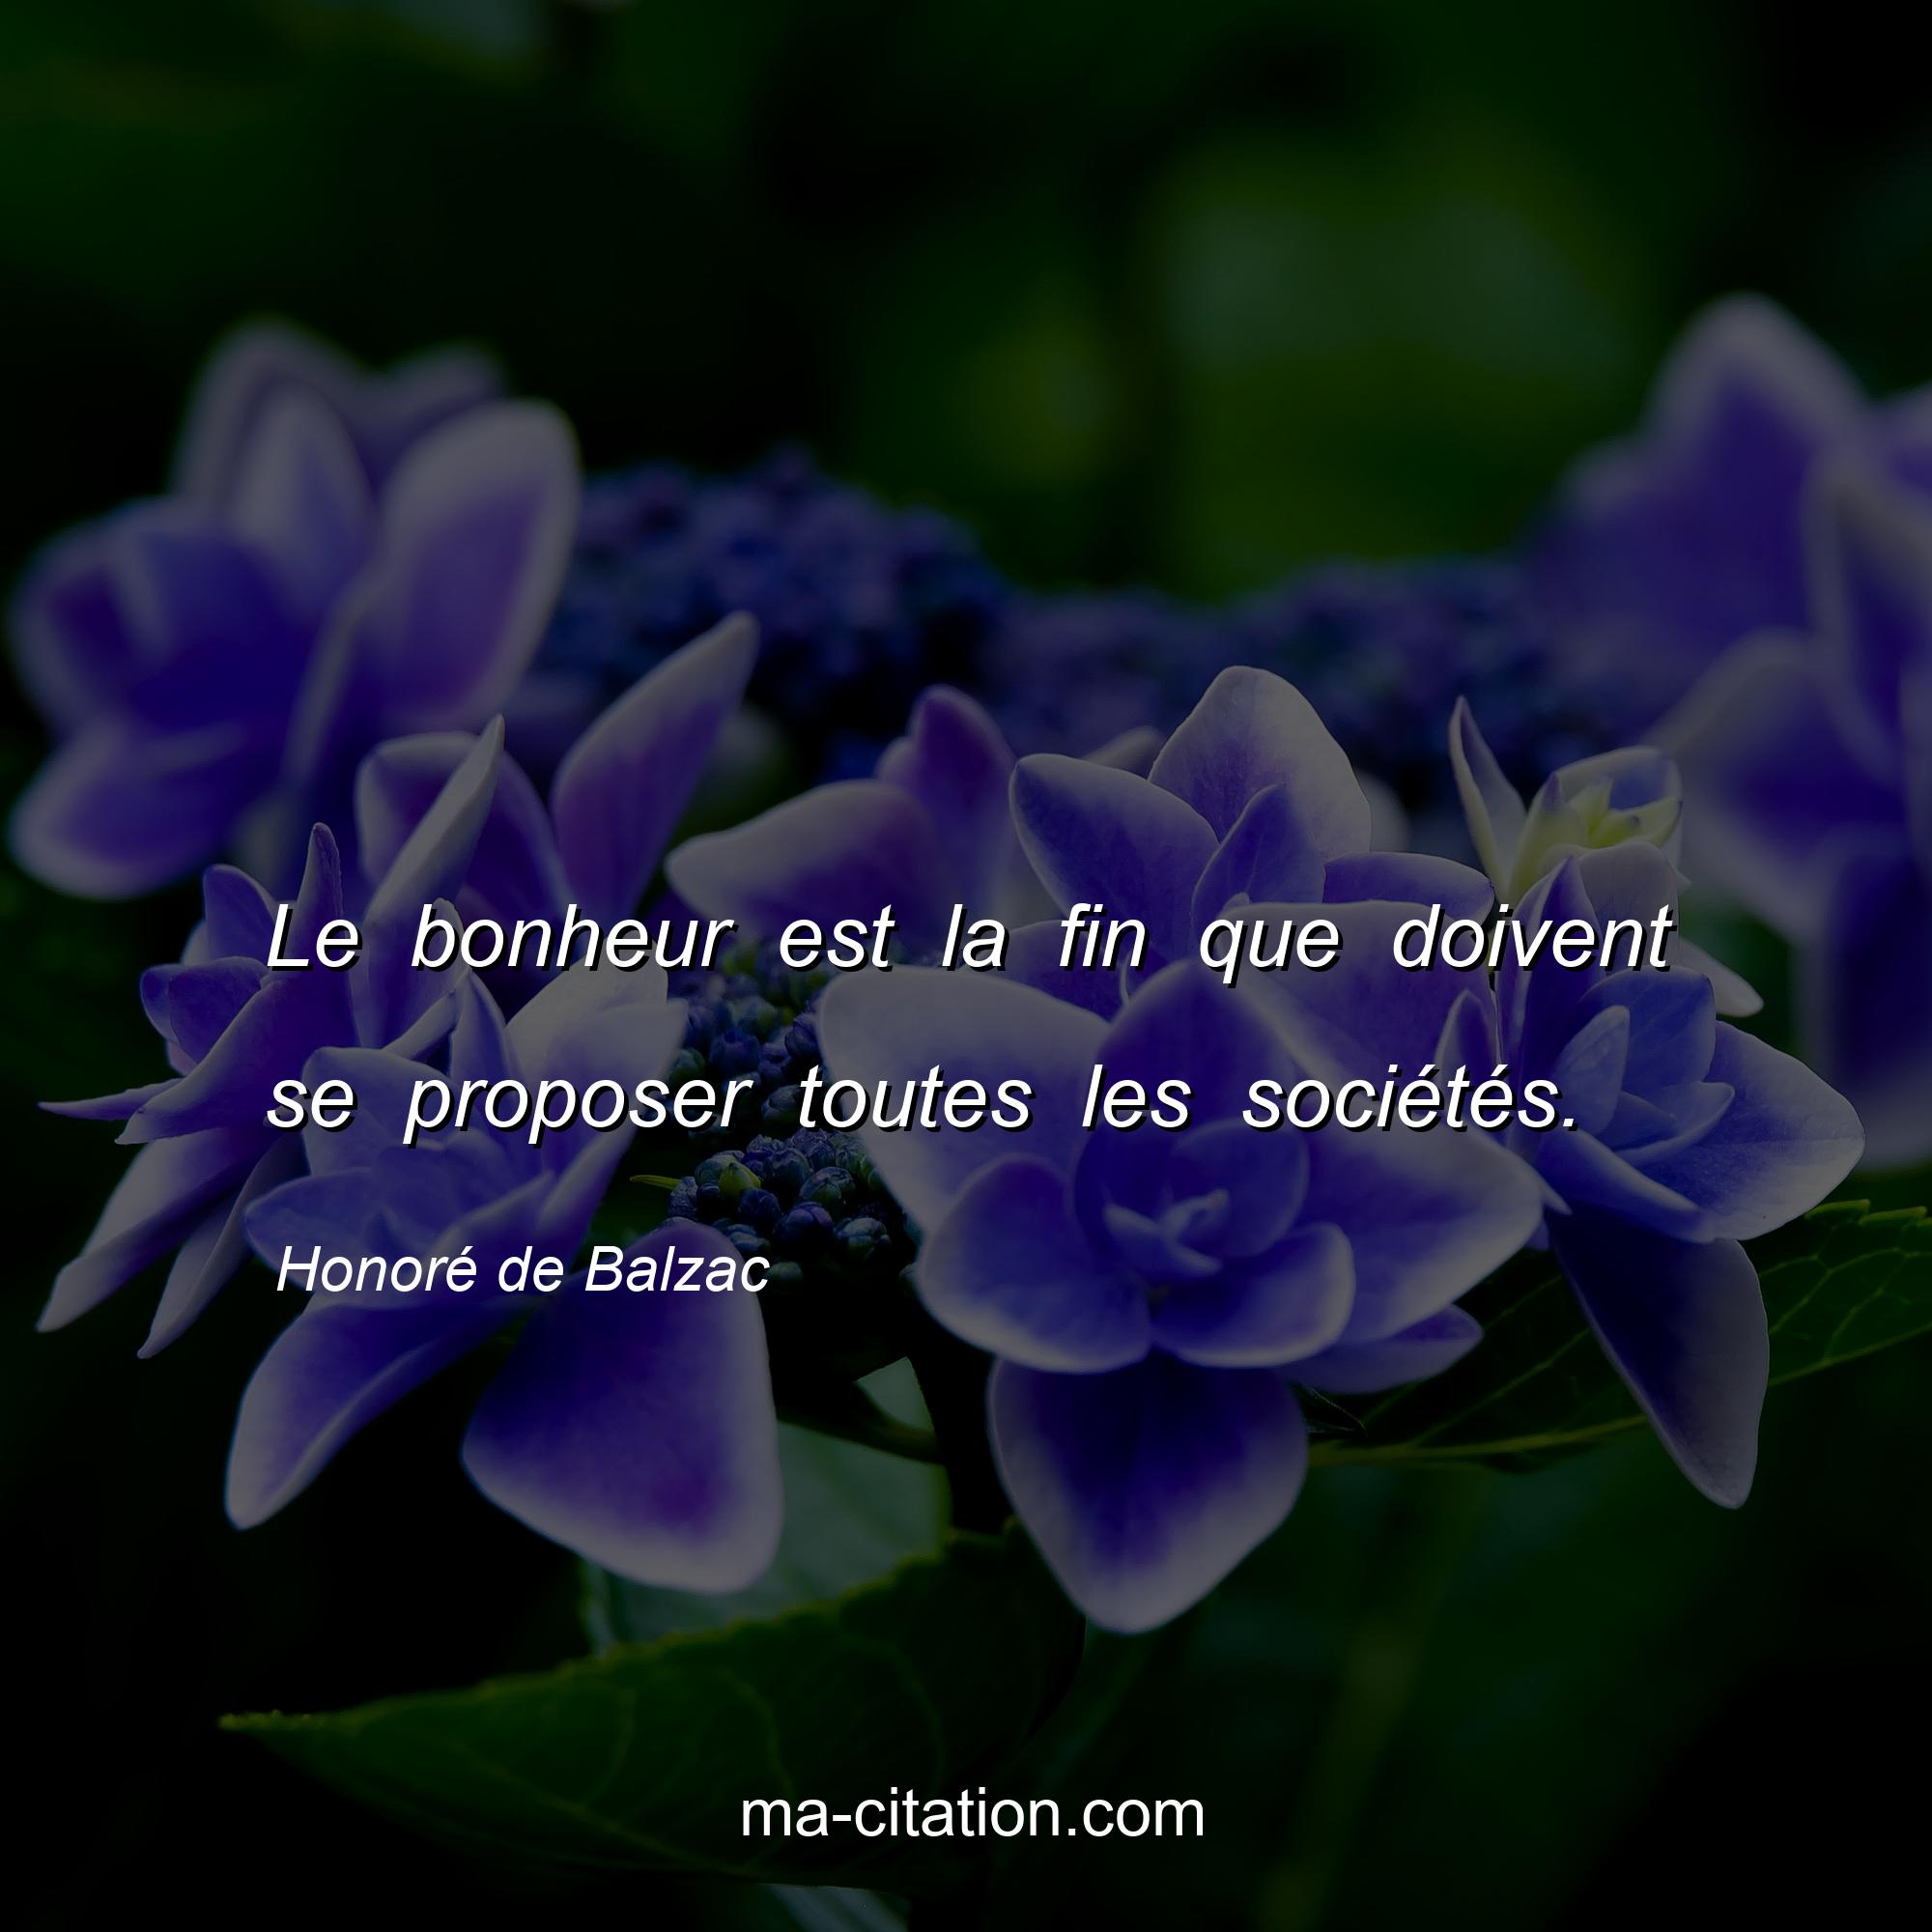 Honoré de Balzac : Le bonheur est la fin que doivent se proposer toutes les sociétés.